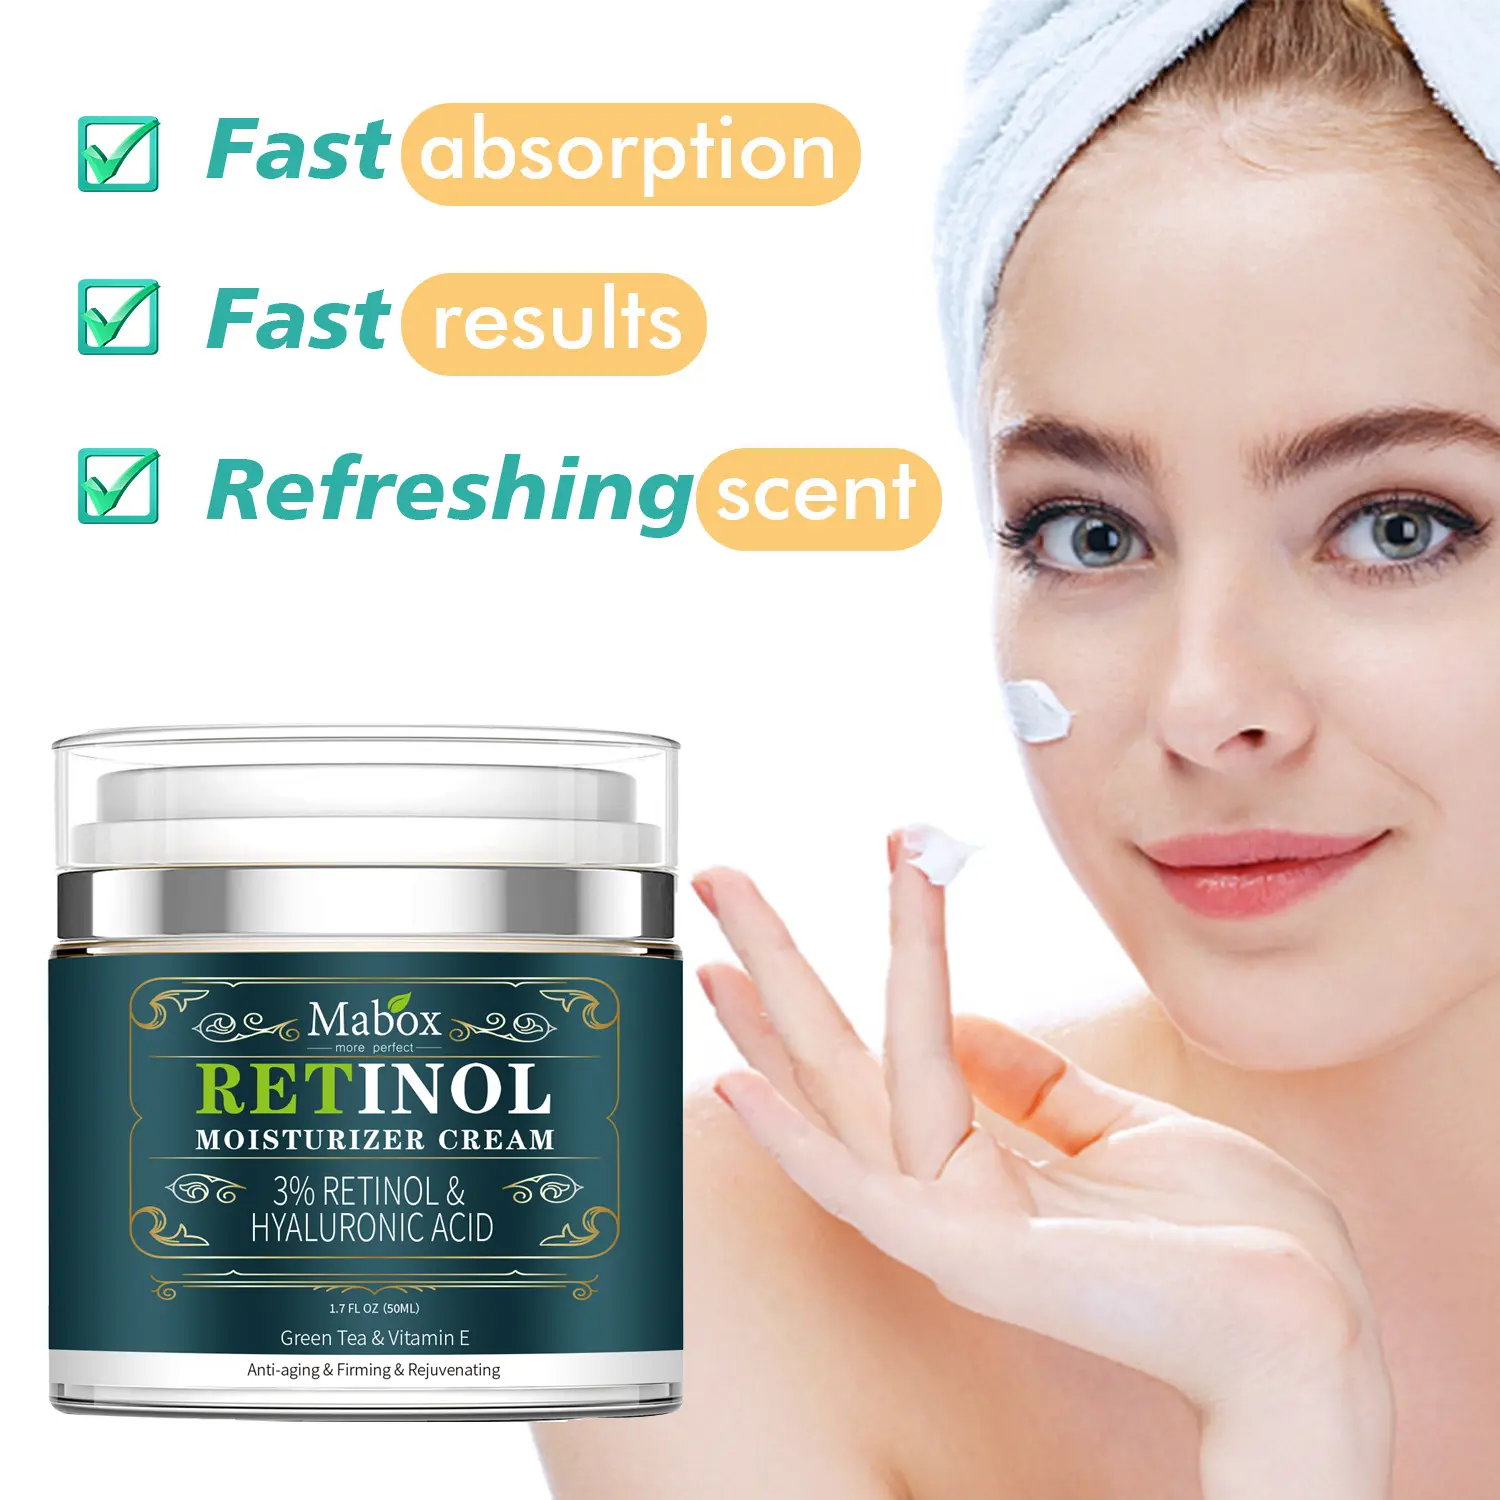 Mabox Retinol Hyaluronic एसिड चेहरे मॉइस्चराइजिंग क्रीम विटामिन एक शराब सार फेस क्रीम सौंदर्य प्रसाधन त्वचा की देखभाल